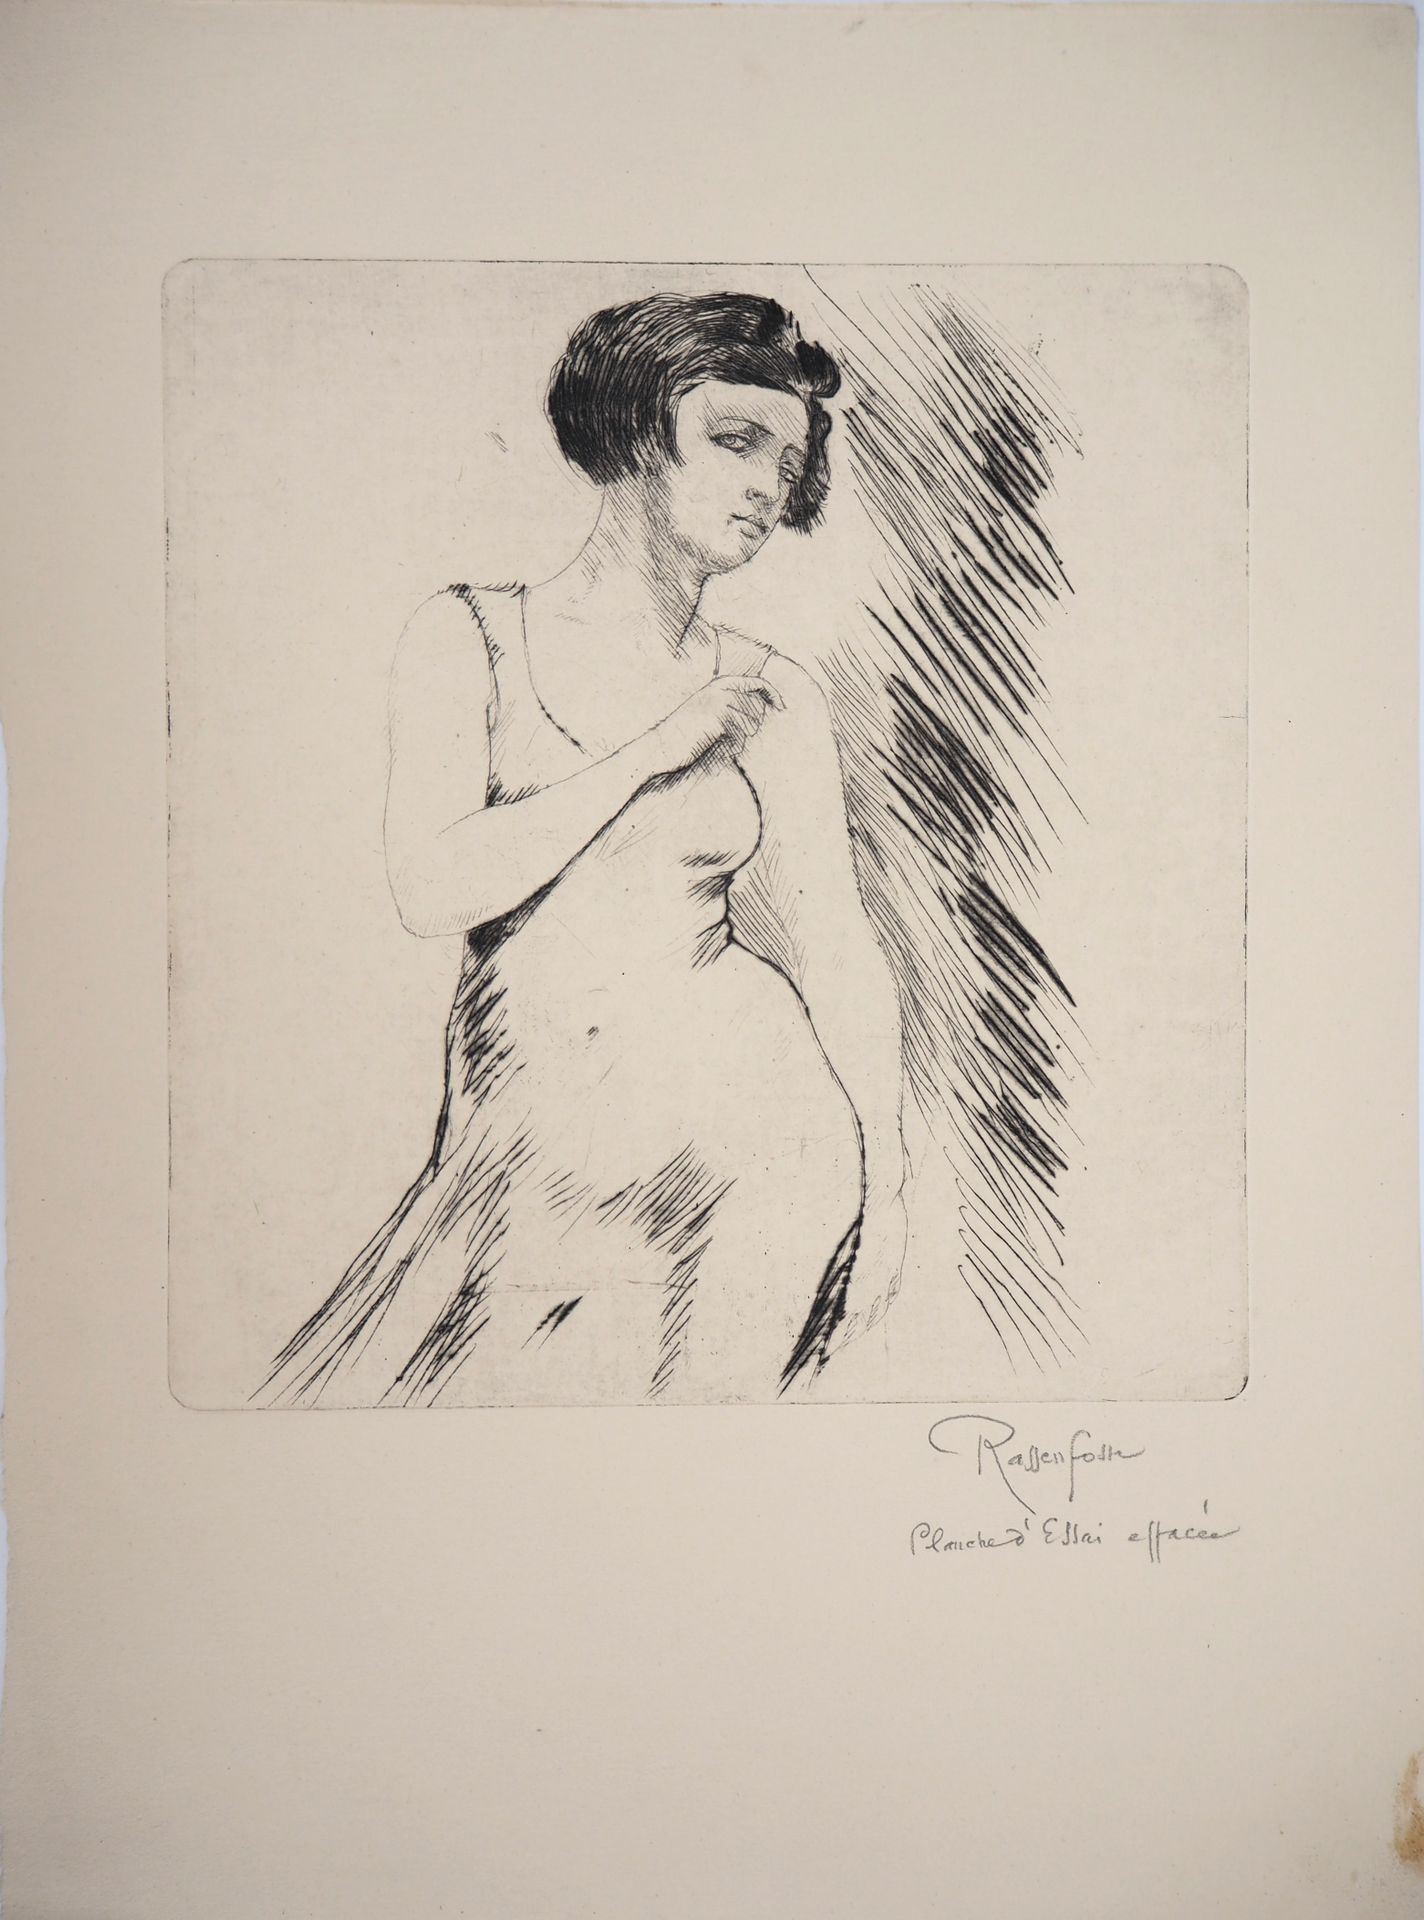 Armand RASSENFOSSE Armand Rassenfosse (1862-1934)

Donna con un vestito, 1928

A&hellip;